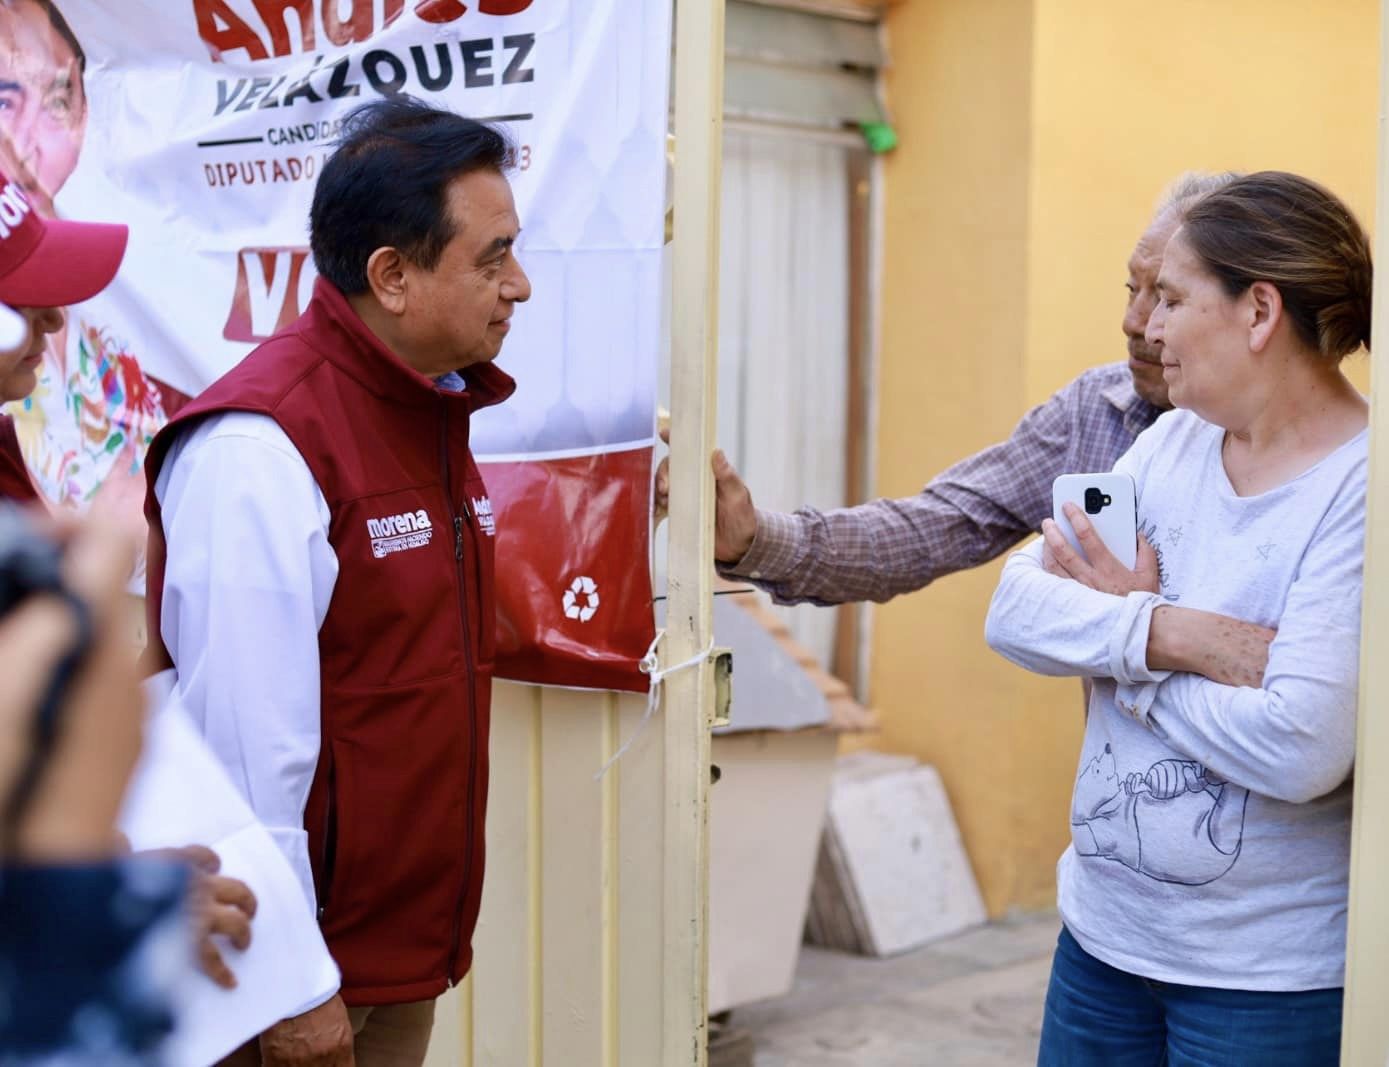 Andrés Velázquez promueve campaña de respeto en jornada electoral